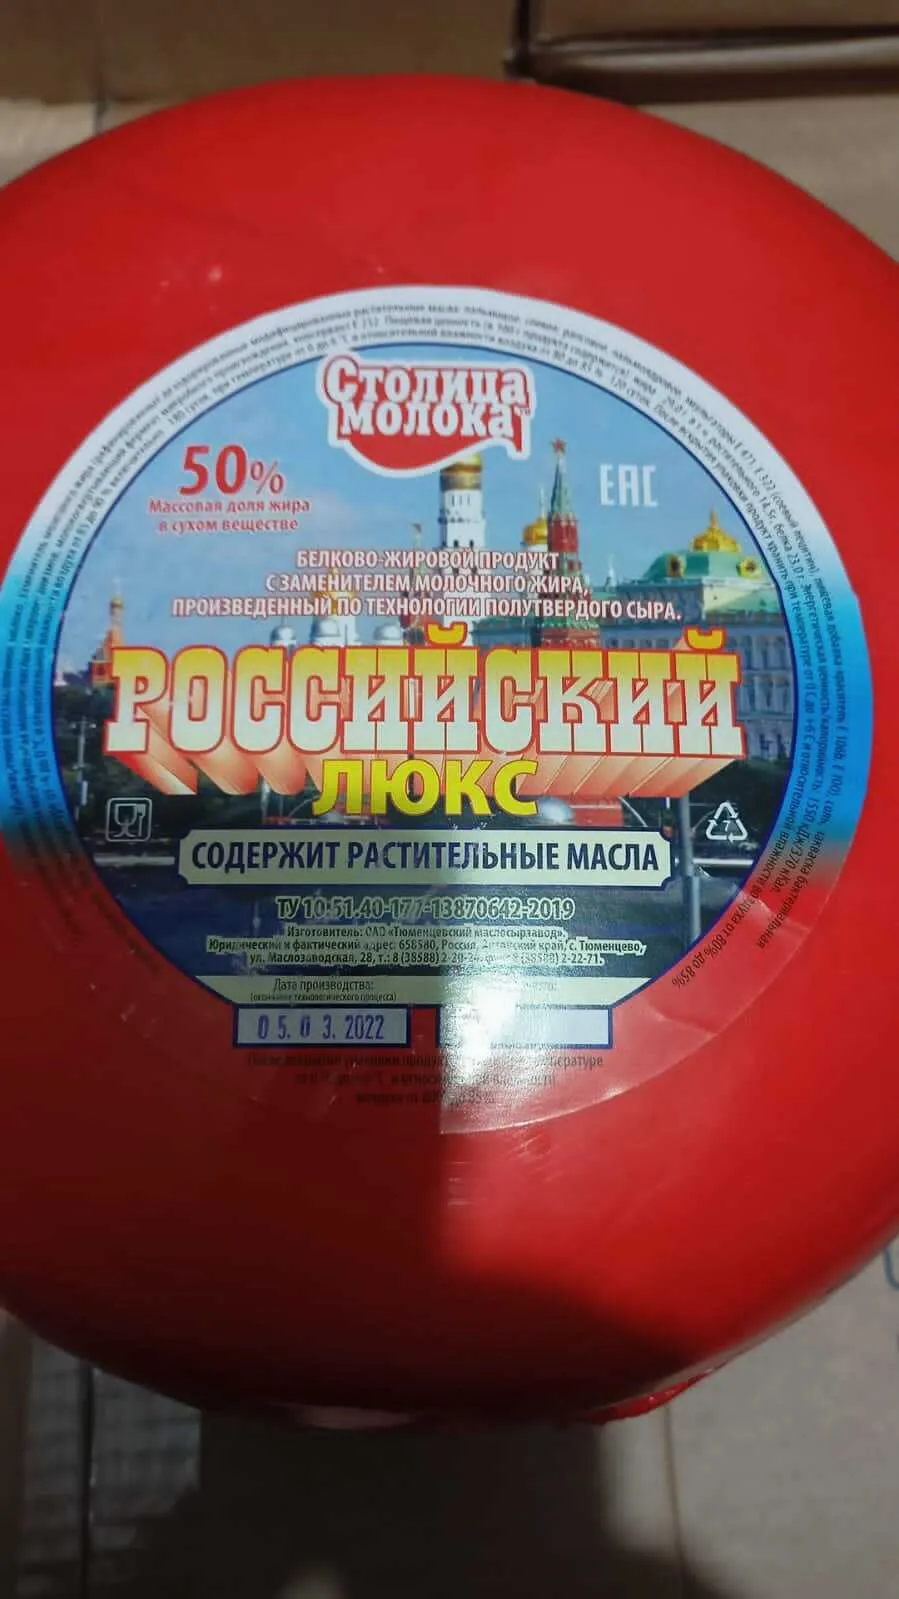 сыр, сырный продукт в Москве опт.цены в Москве